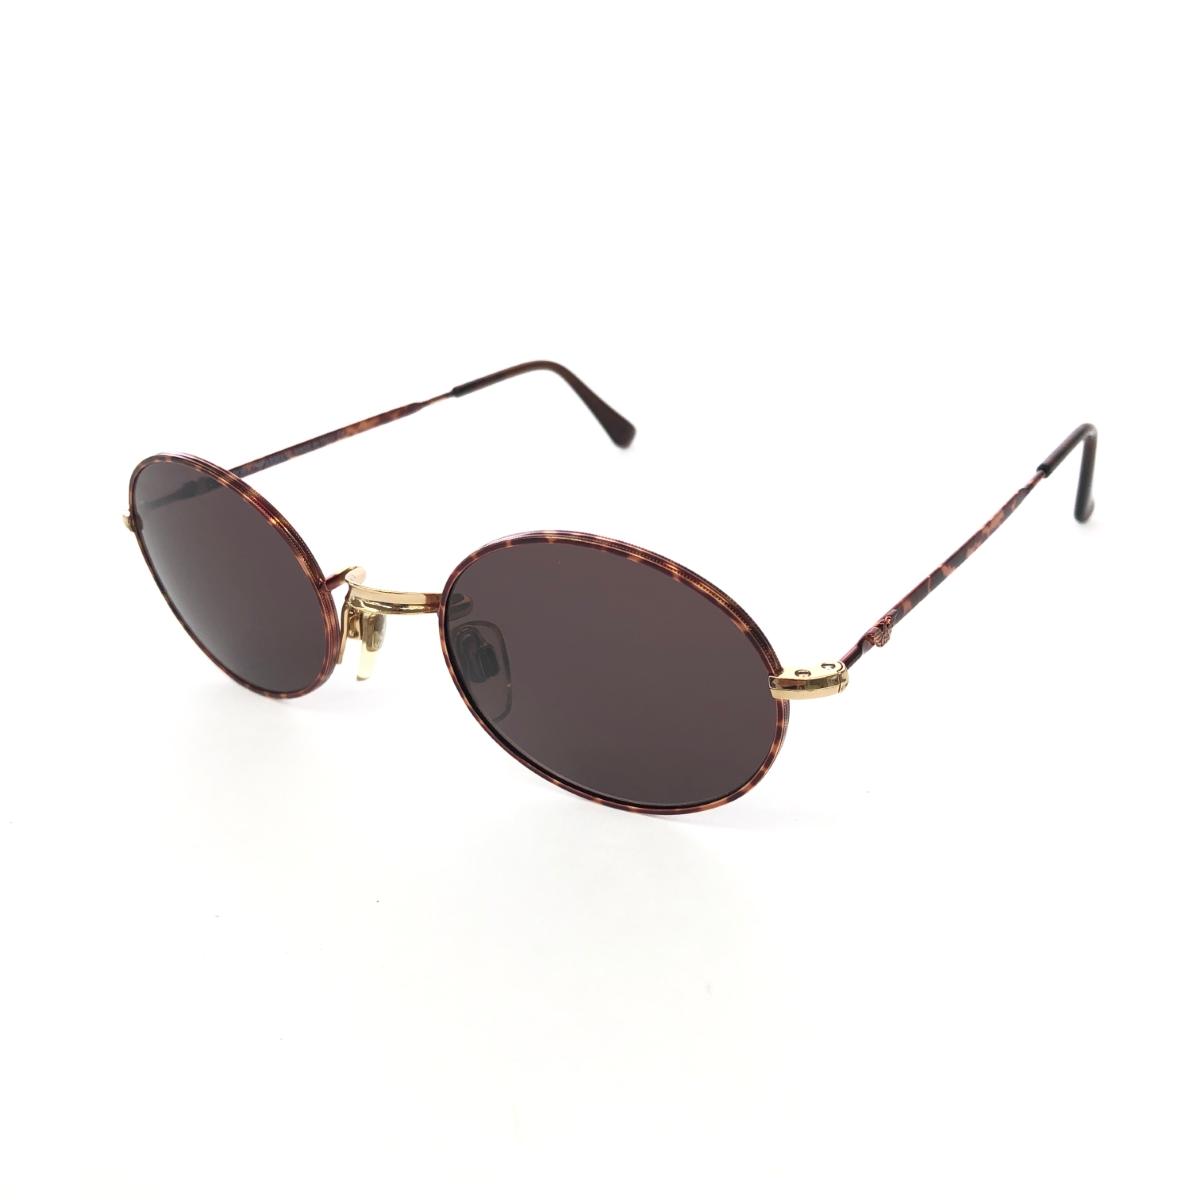 EMPORIO ARMANI エンポリオアルマーニ サングラス 002 721 ブラウン オーバル型 ユニセックス メガネ 眼鏡 サングラス sunglasses 服飾小物 